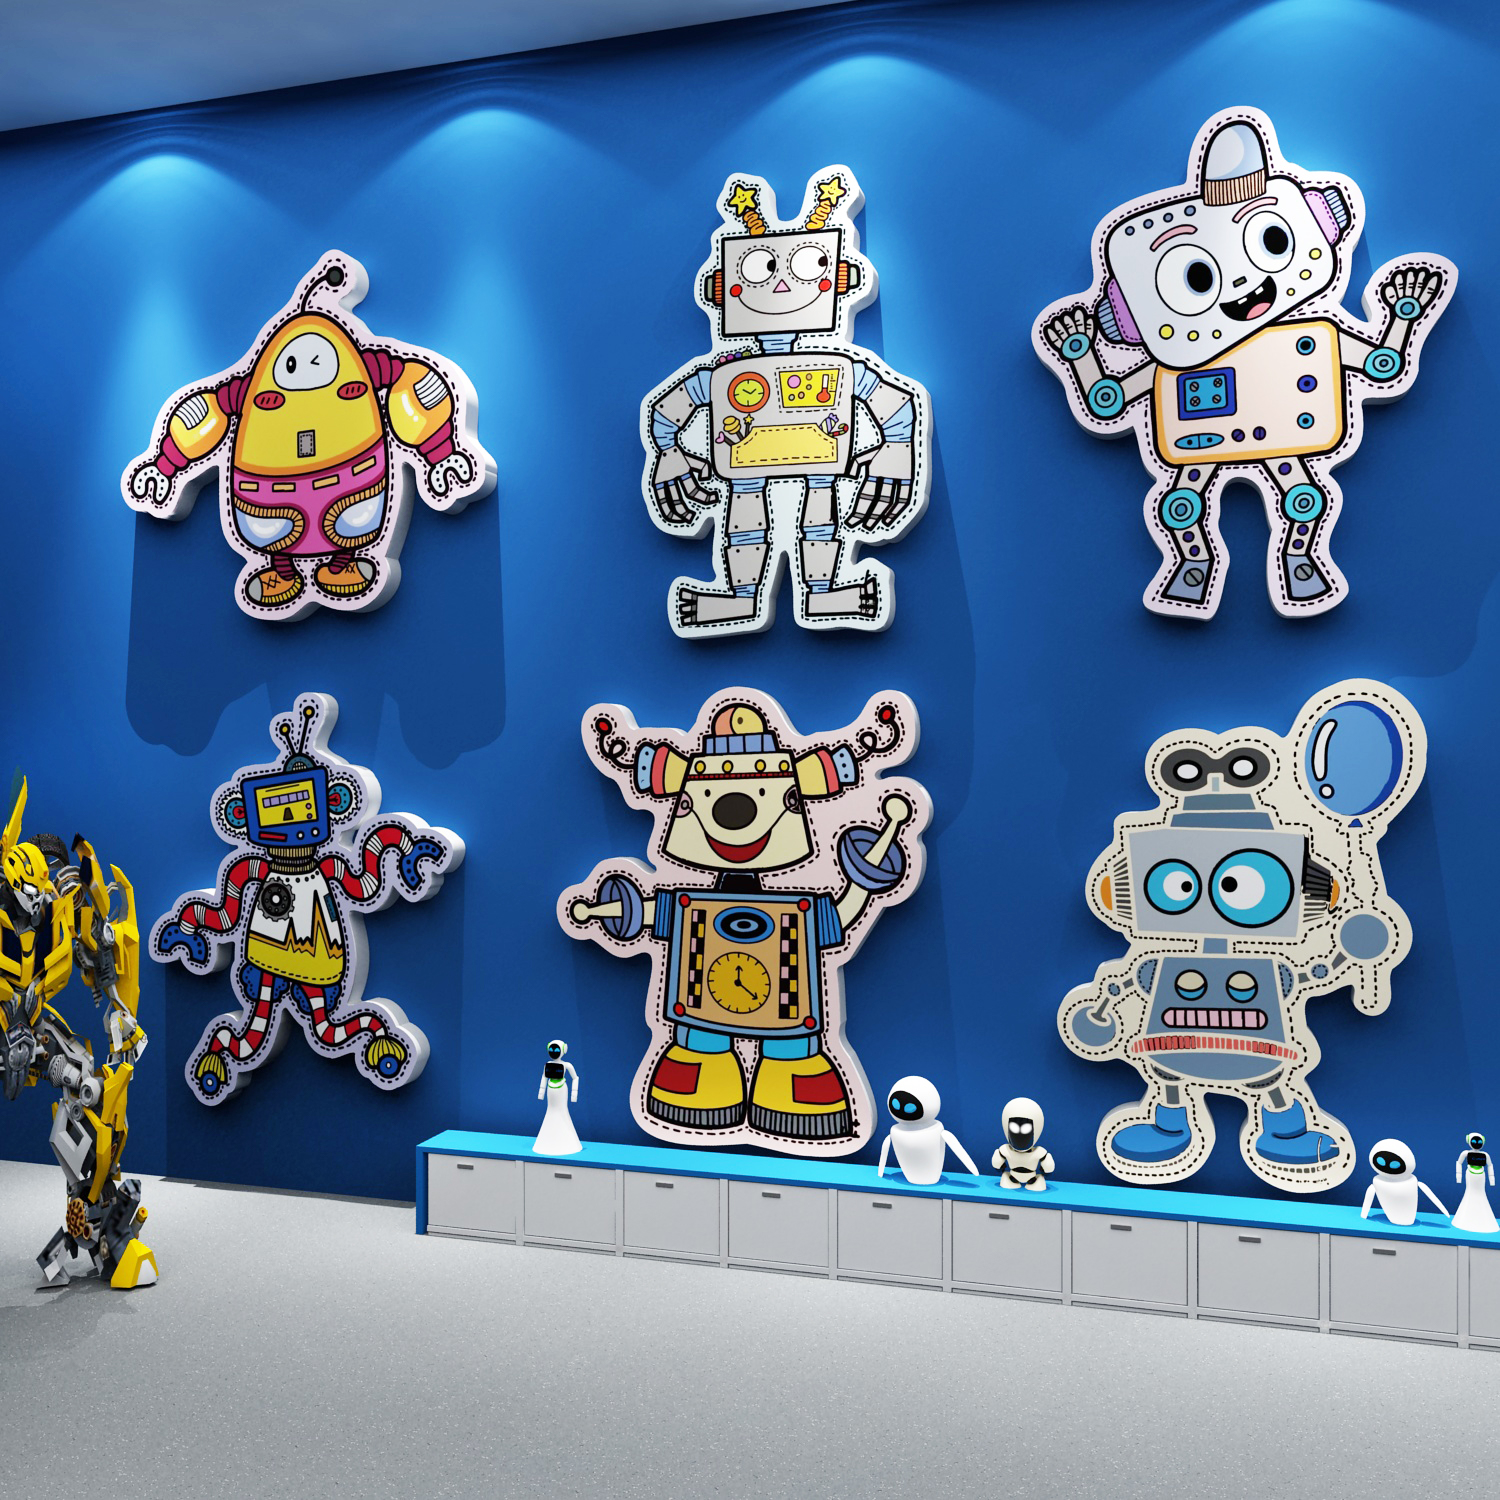 机器人贴纸画乐高教室环创布置幼儿园科学主题墙面装饰少编程文化